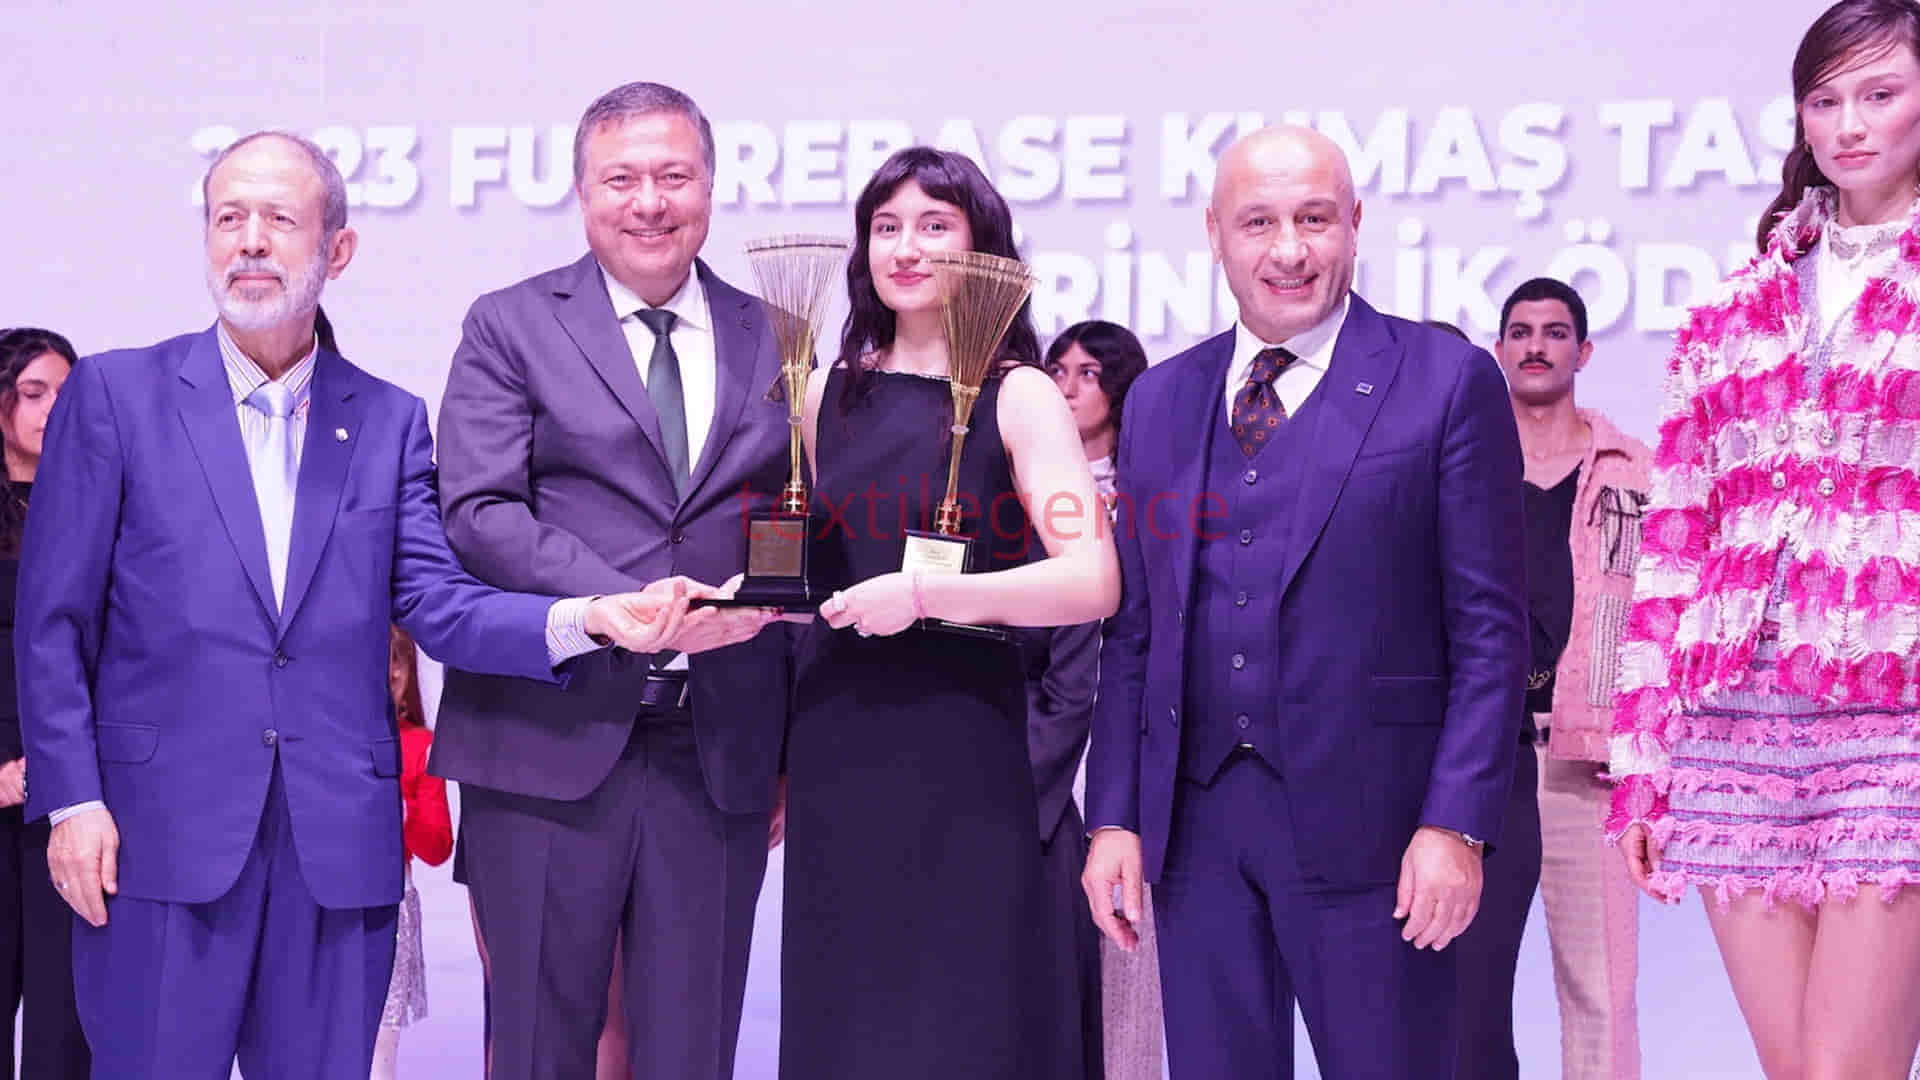 Futuretex İstanbul Kumaş Tasarım Yarışması ödülleri sahiplerini buldu  Görsel Kaynak: Futuretex